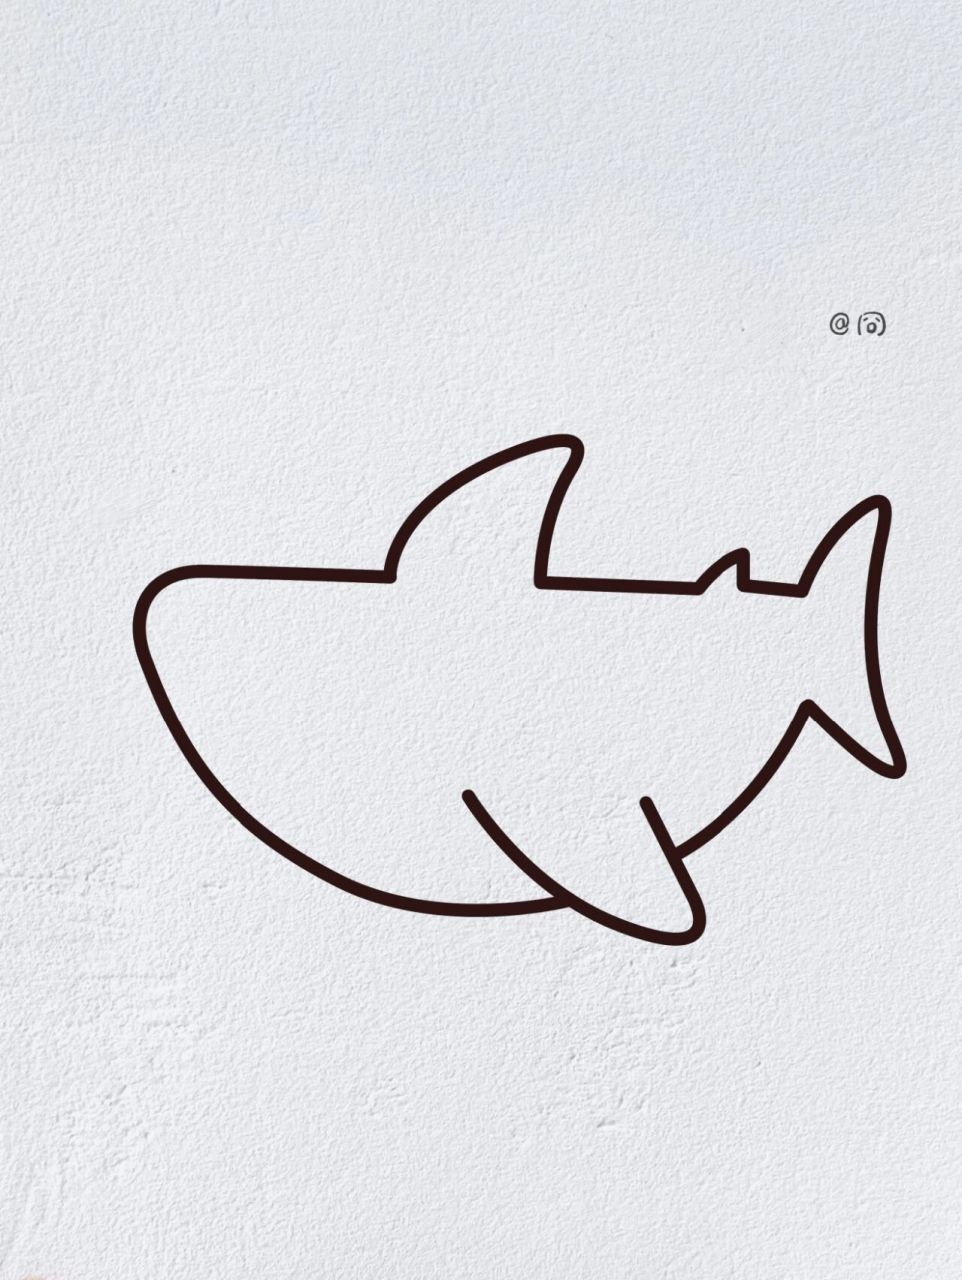 海底动物鲨鱼简笔画图片